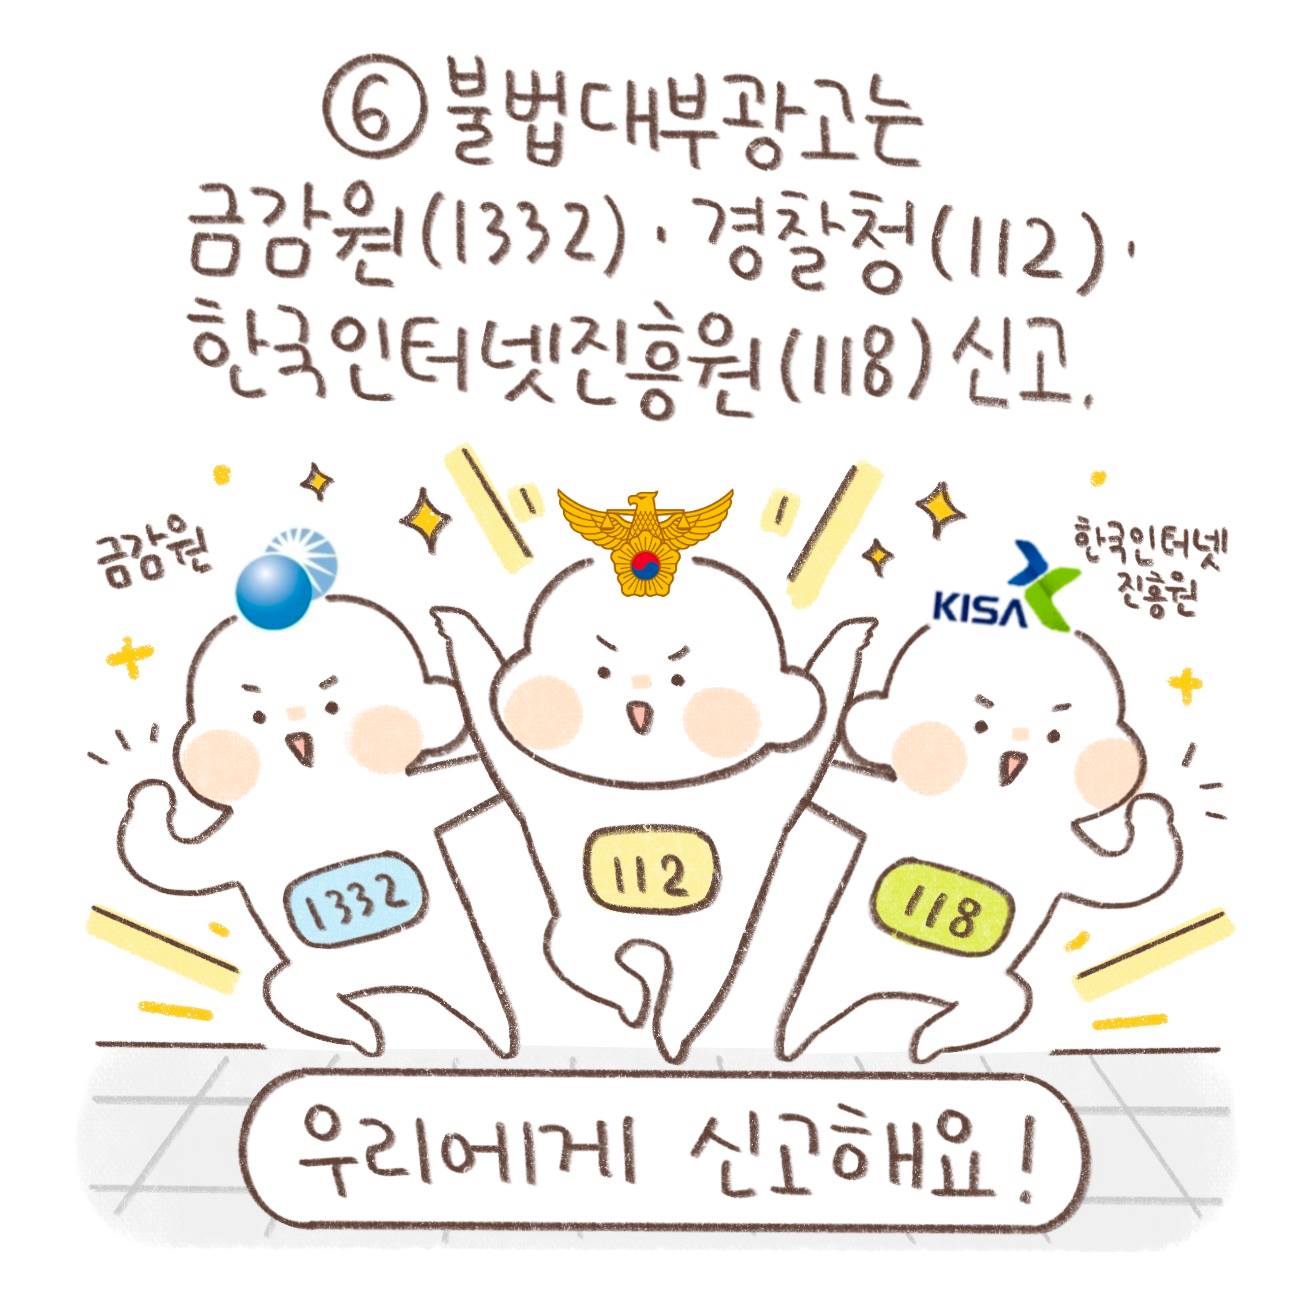 ⑥불법대부광고는 금감원(1332)·경찰청(112)·한국인터넷진흥원(118) 신고.